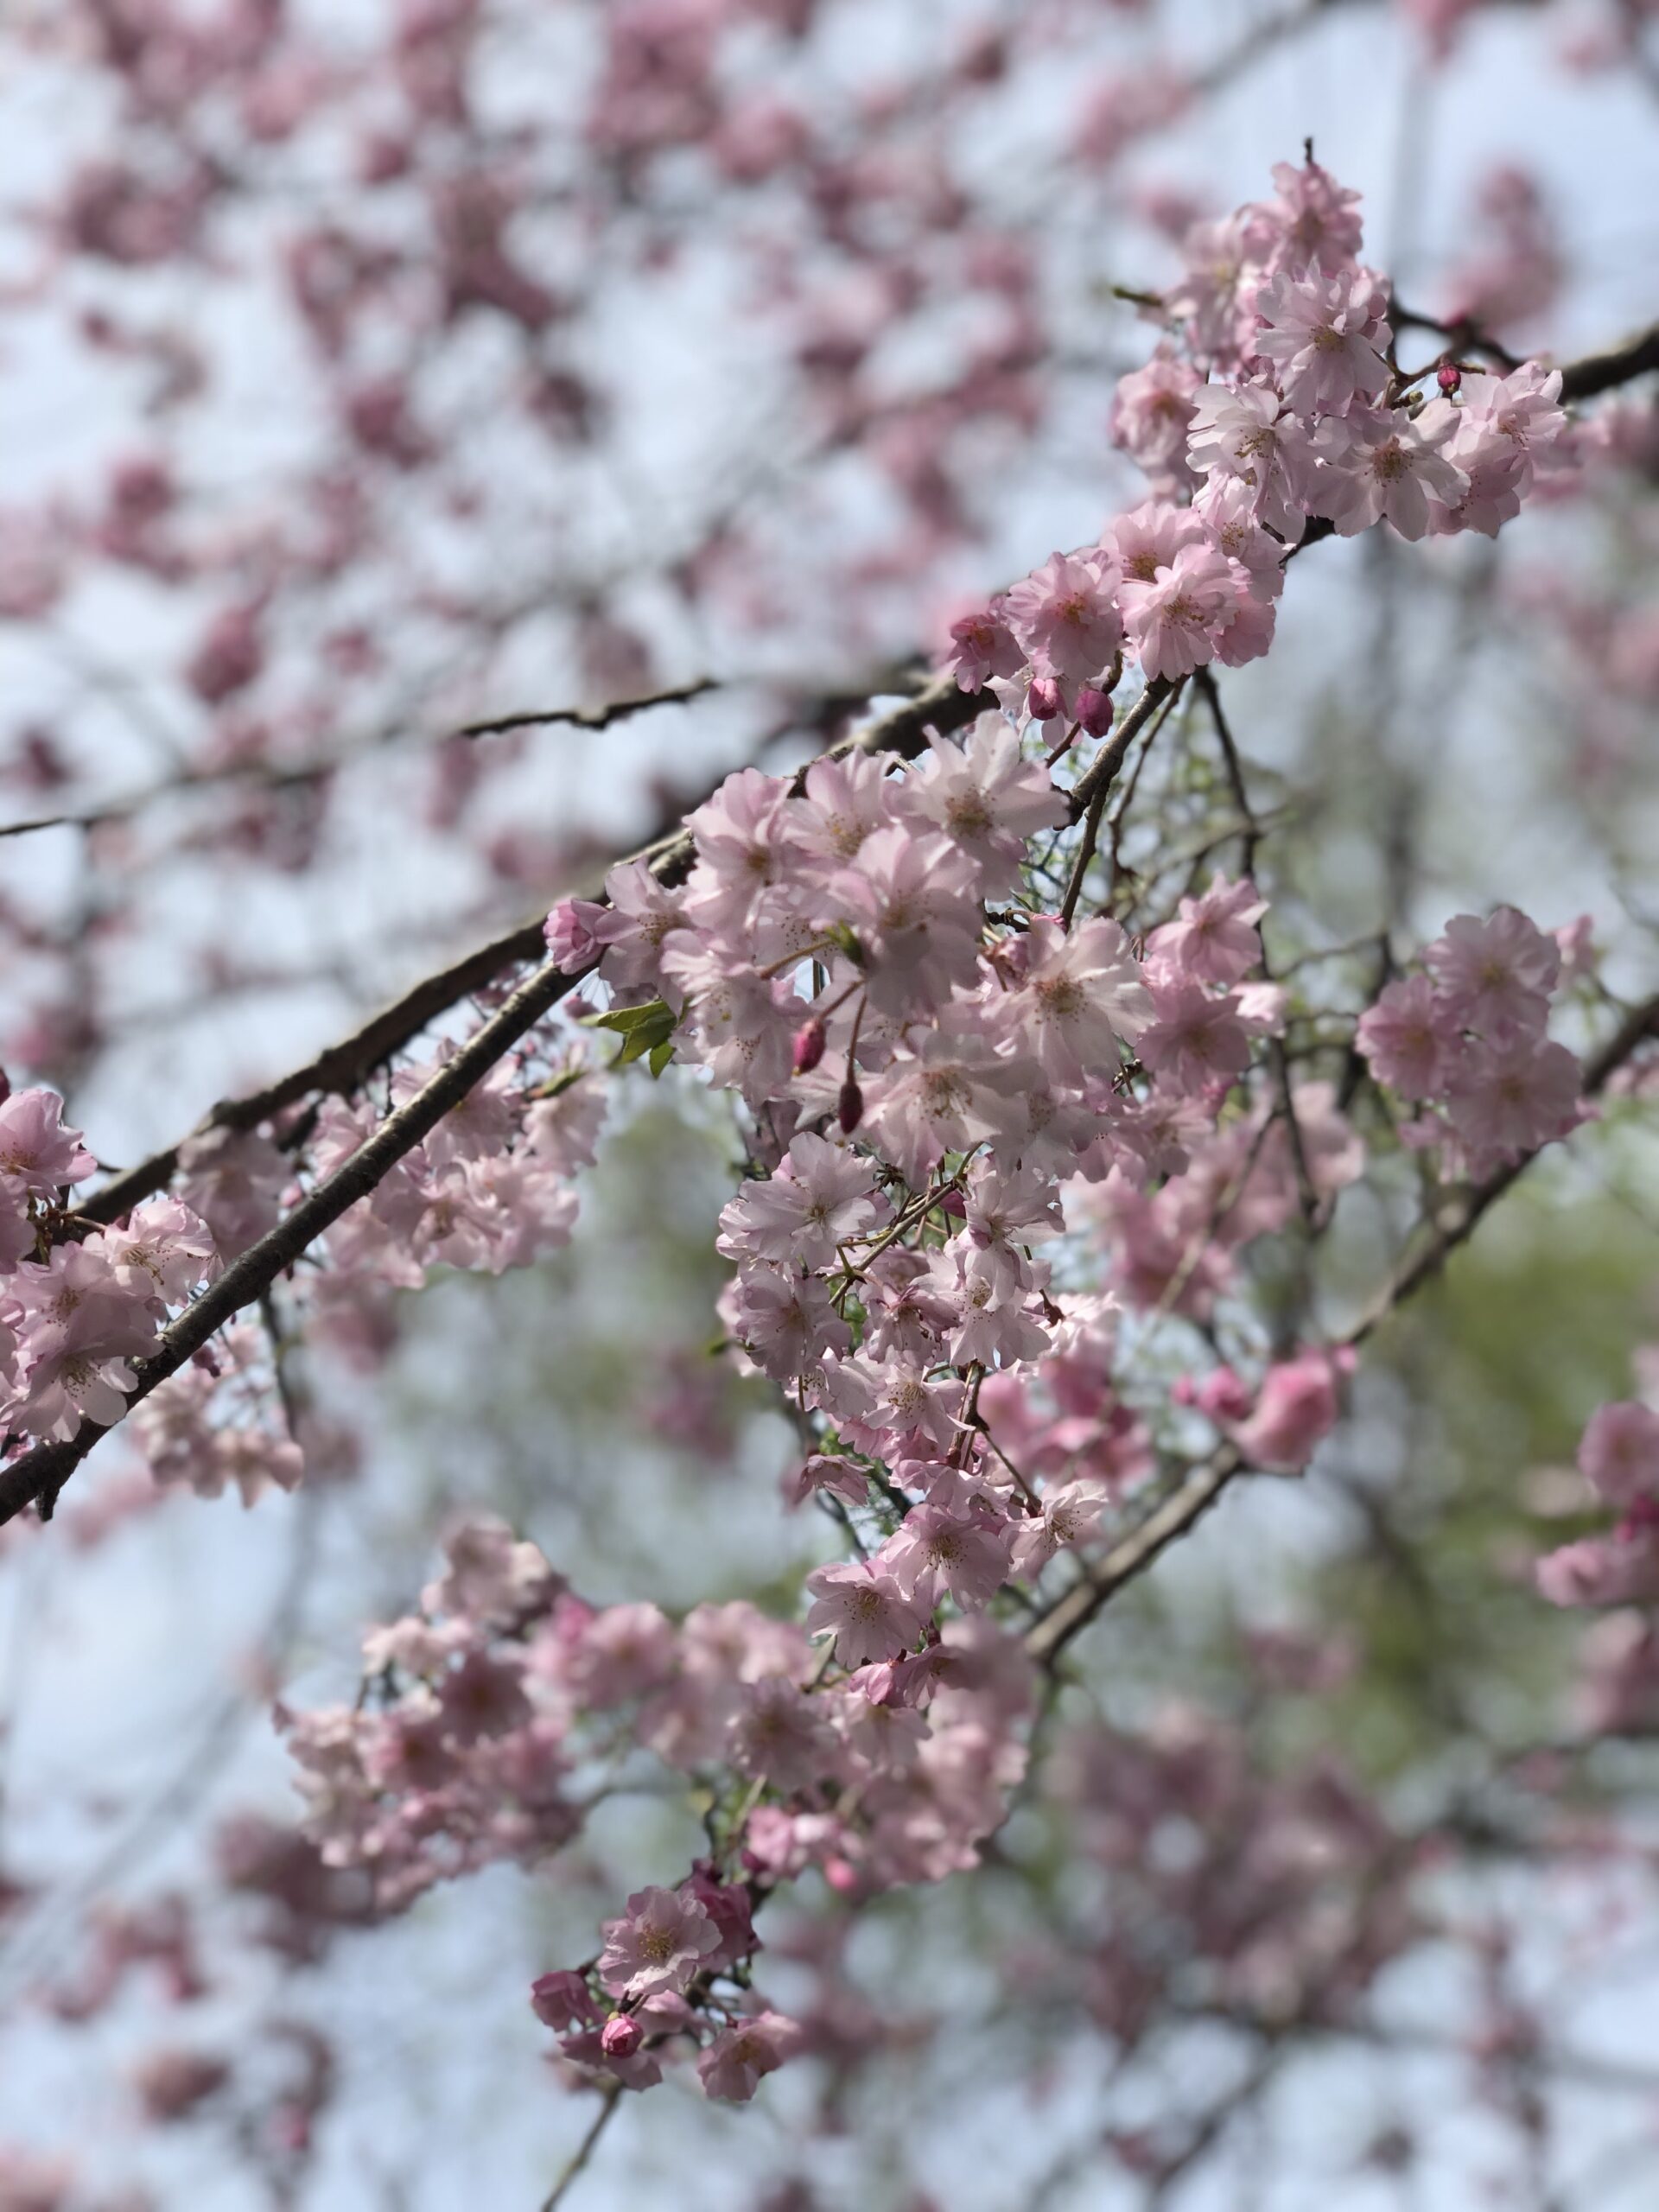 平和公園の桜